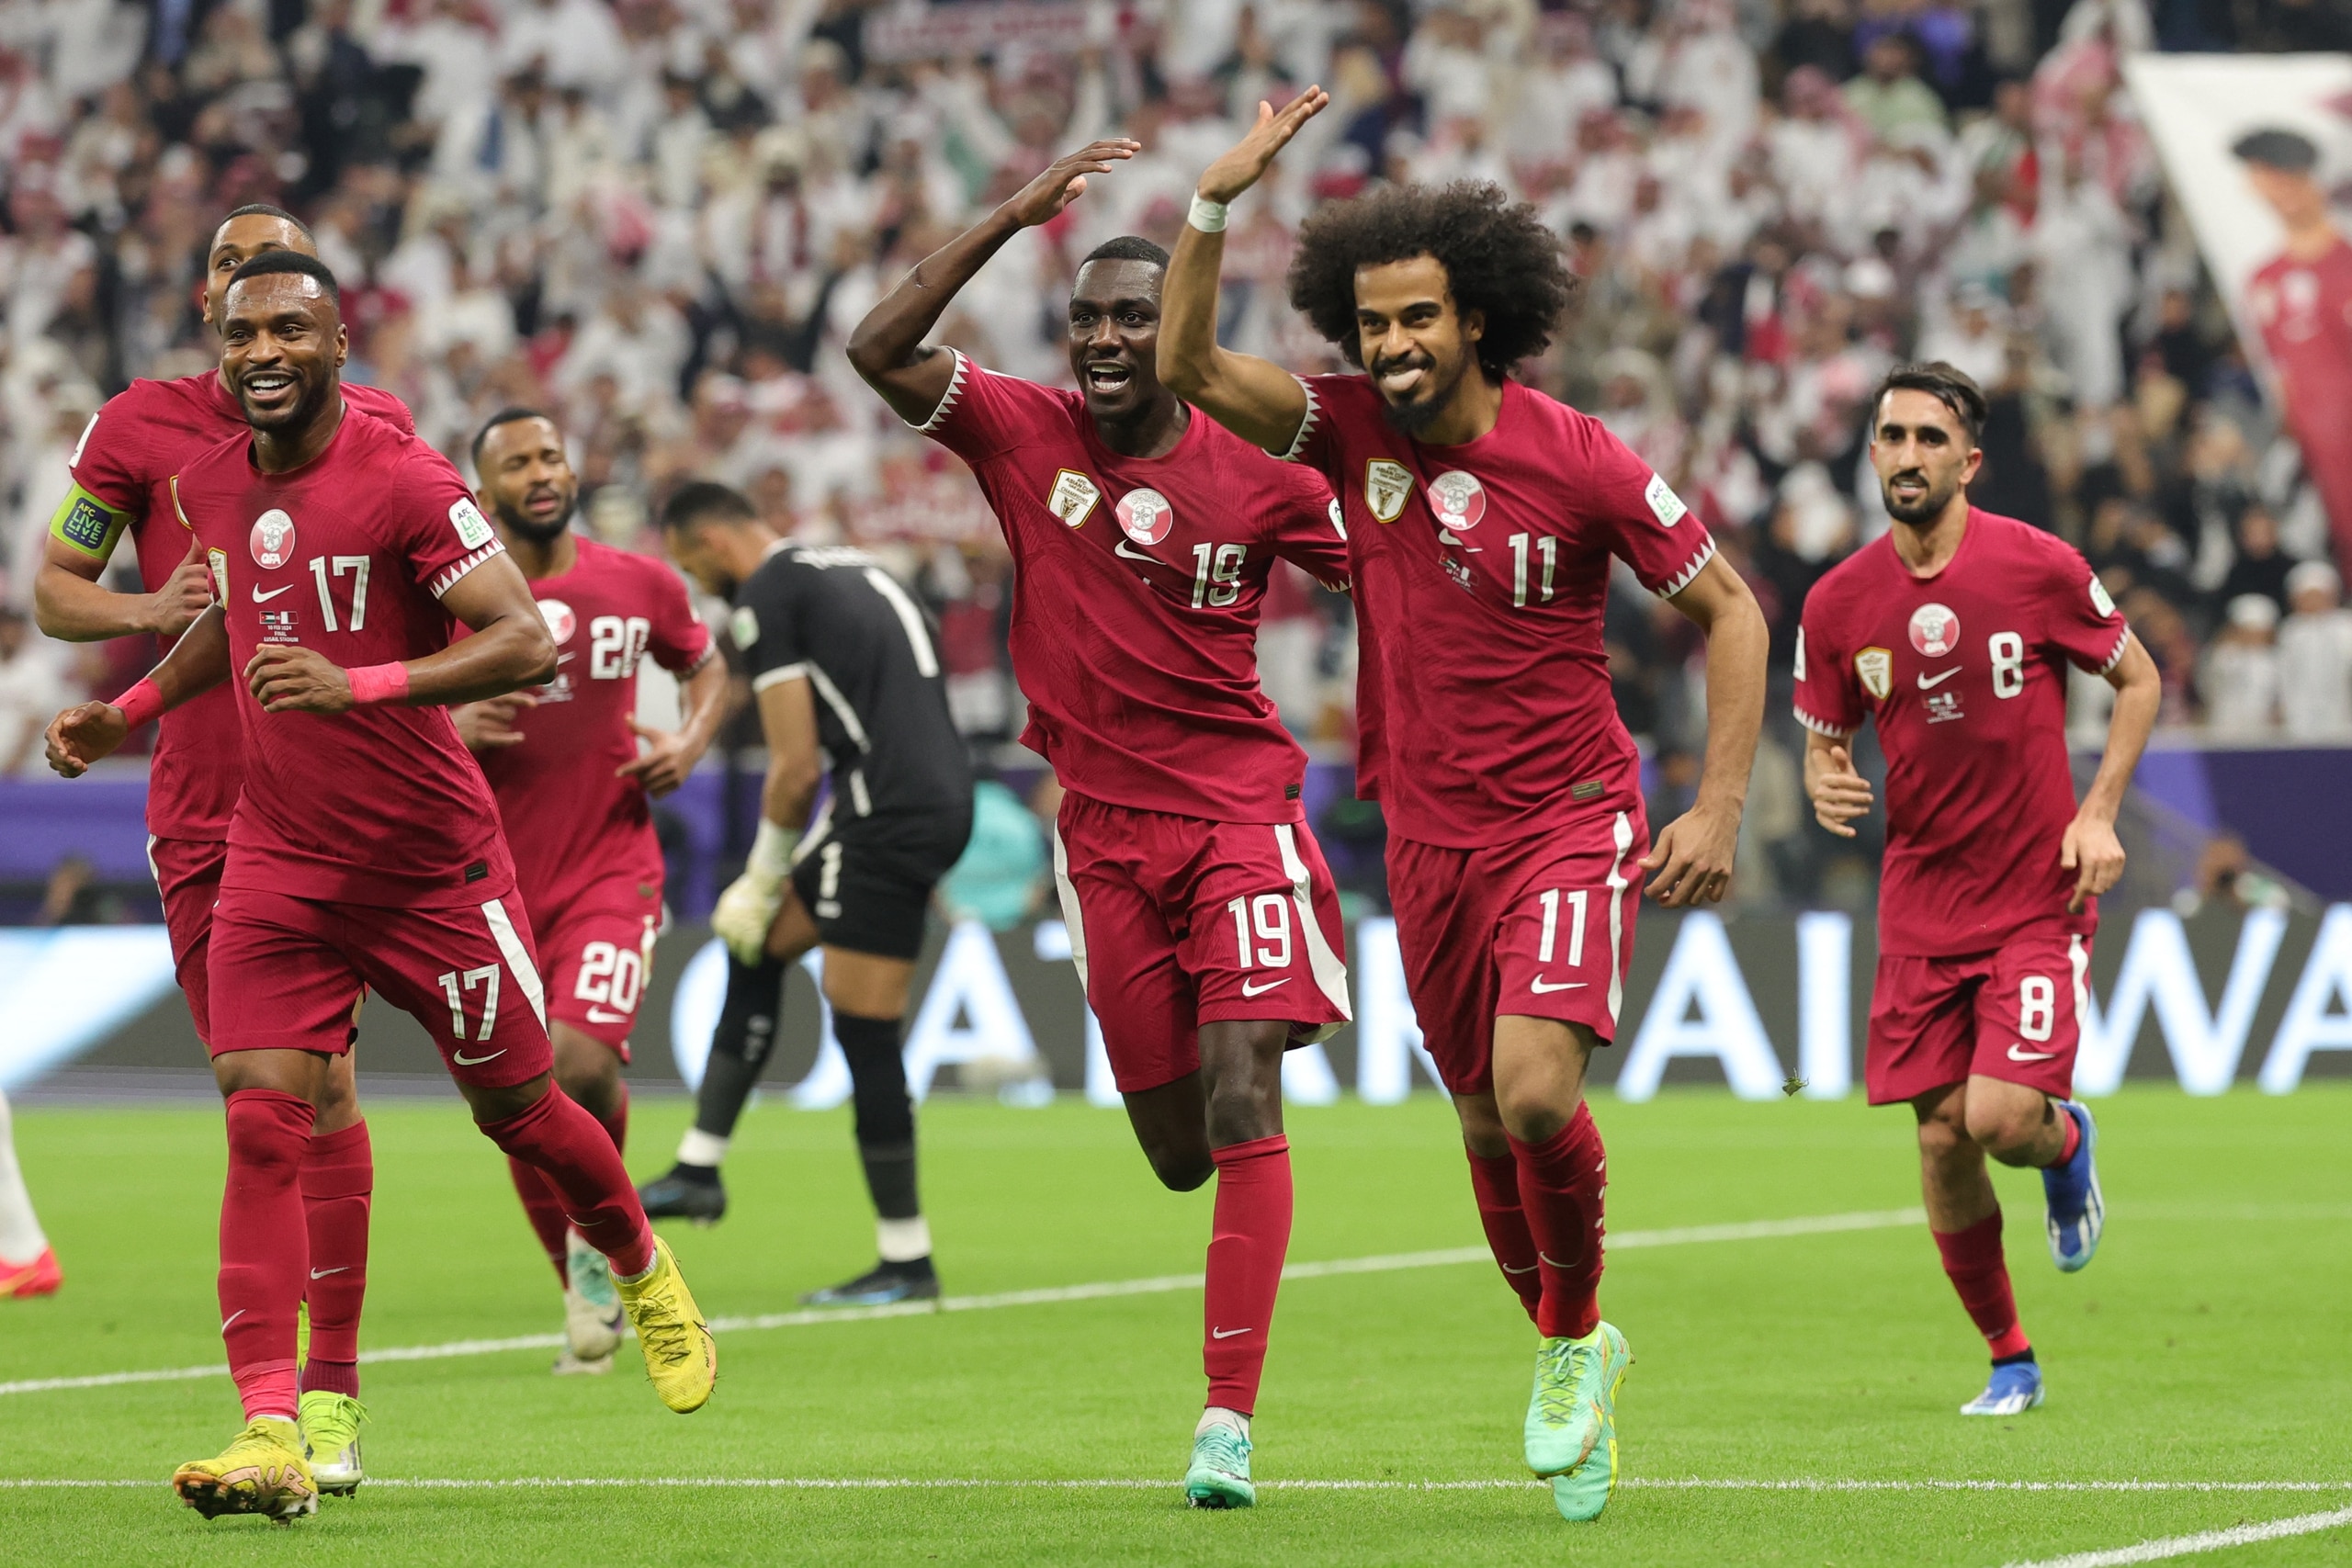 Chức vô địch Asian Cup có giúp đội Qatar trở thành thế lực châu Á?- Ảnh 2.